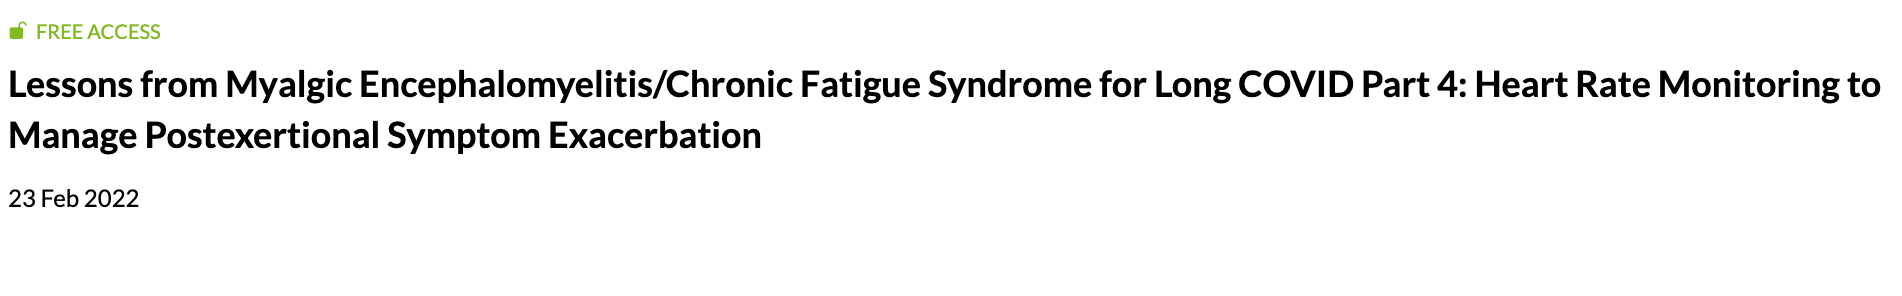 Leçons tirées de l'encéphalomyélite myalgique/syndrome de fatigue chronique pour COVID Long Partie 4 : surveillance de la rythme cardiaque pour gérer l'exacerbation des symptômes post-effort 23 Feb 2022